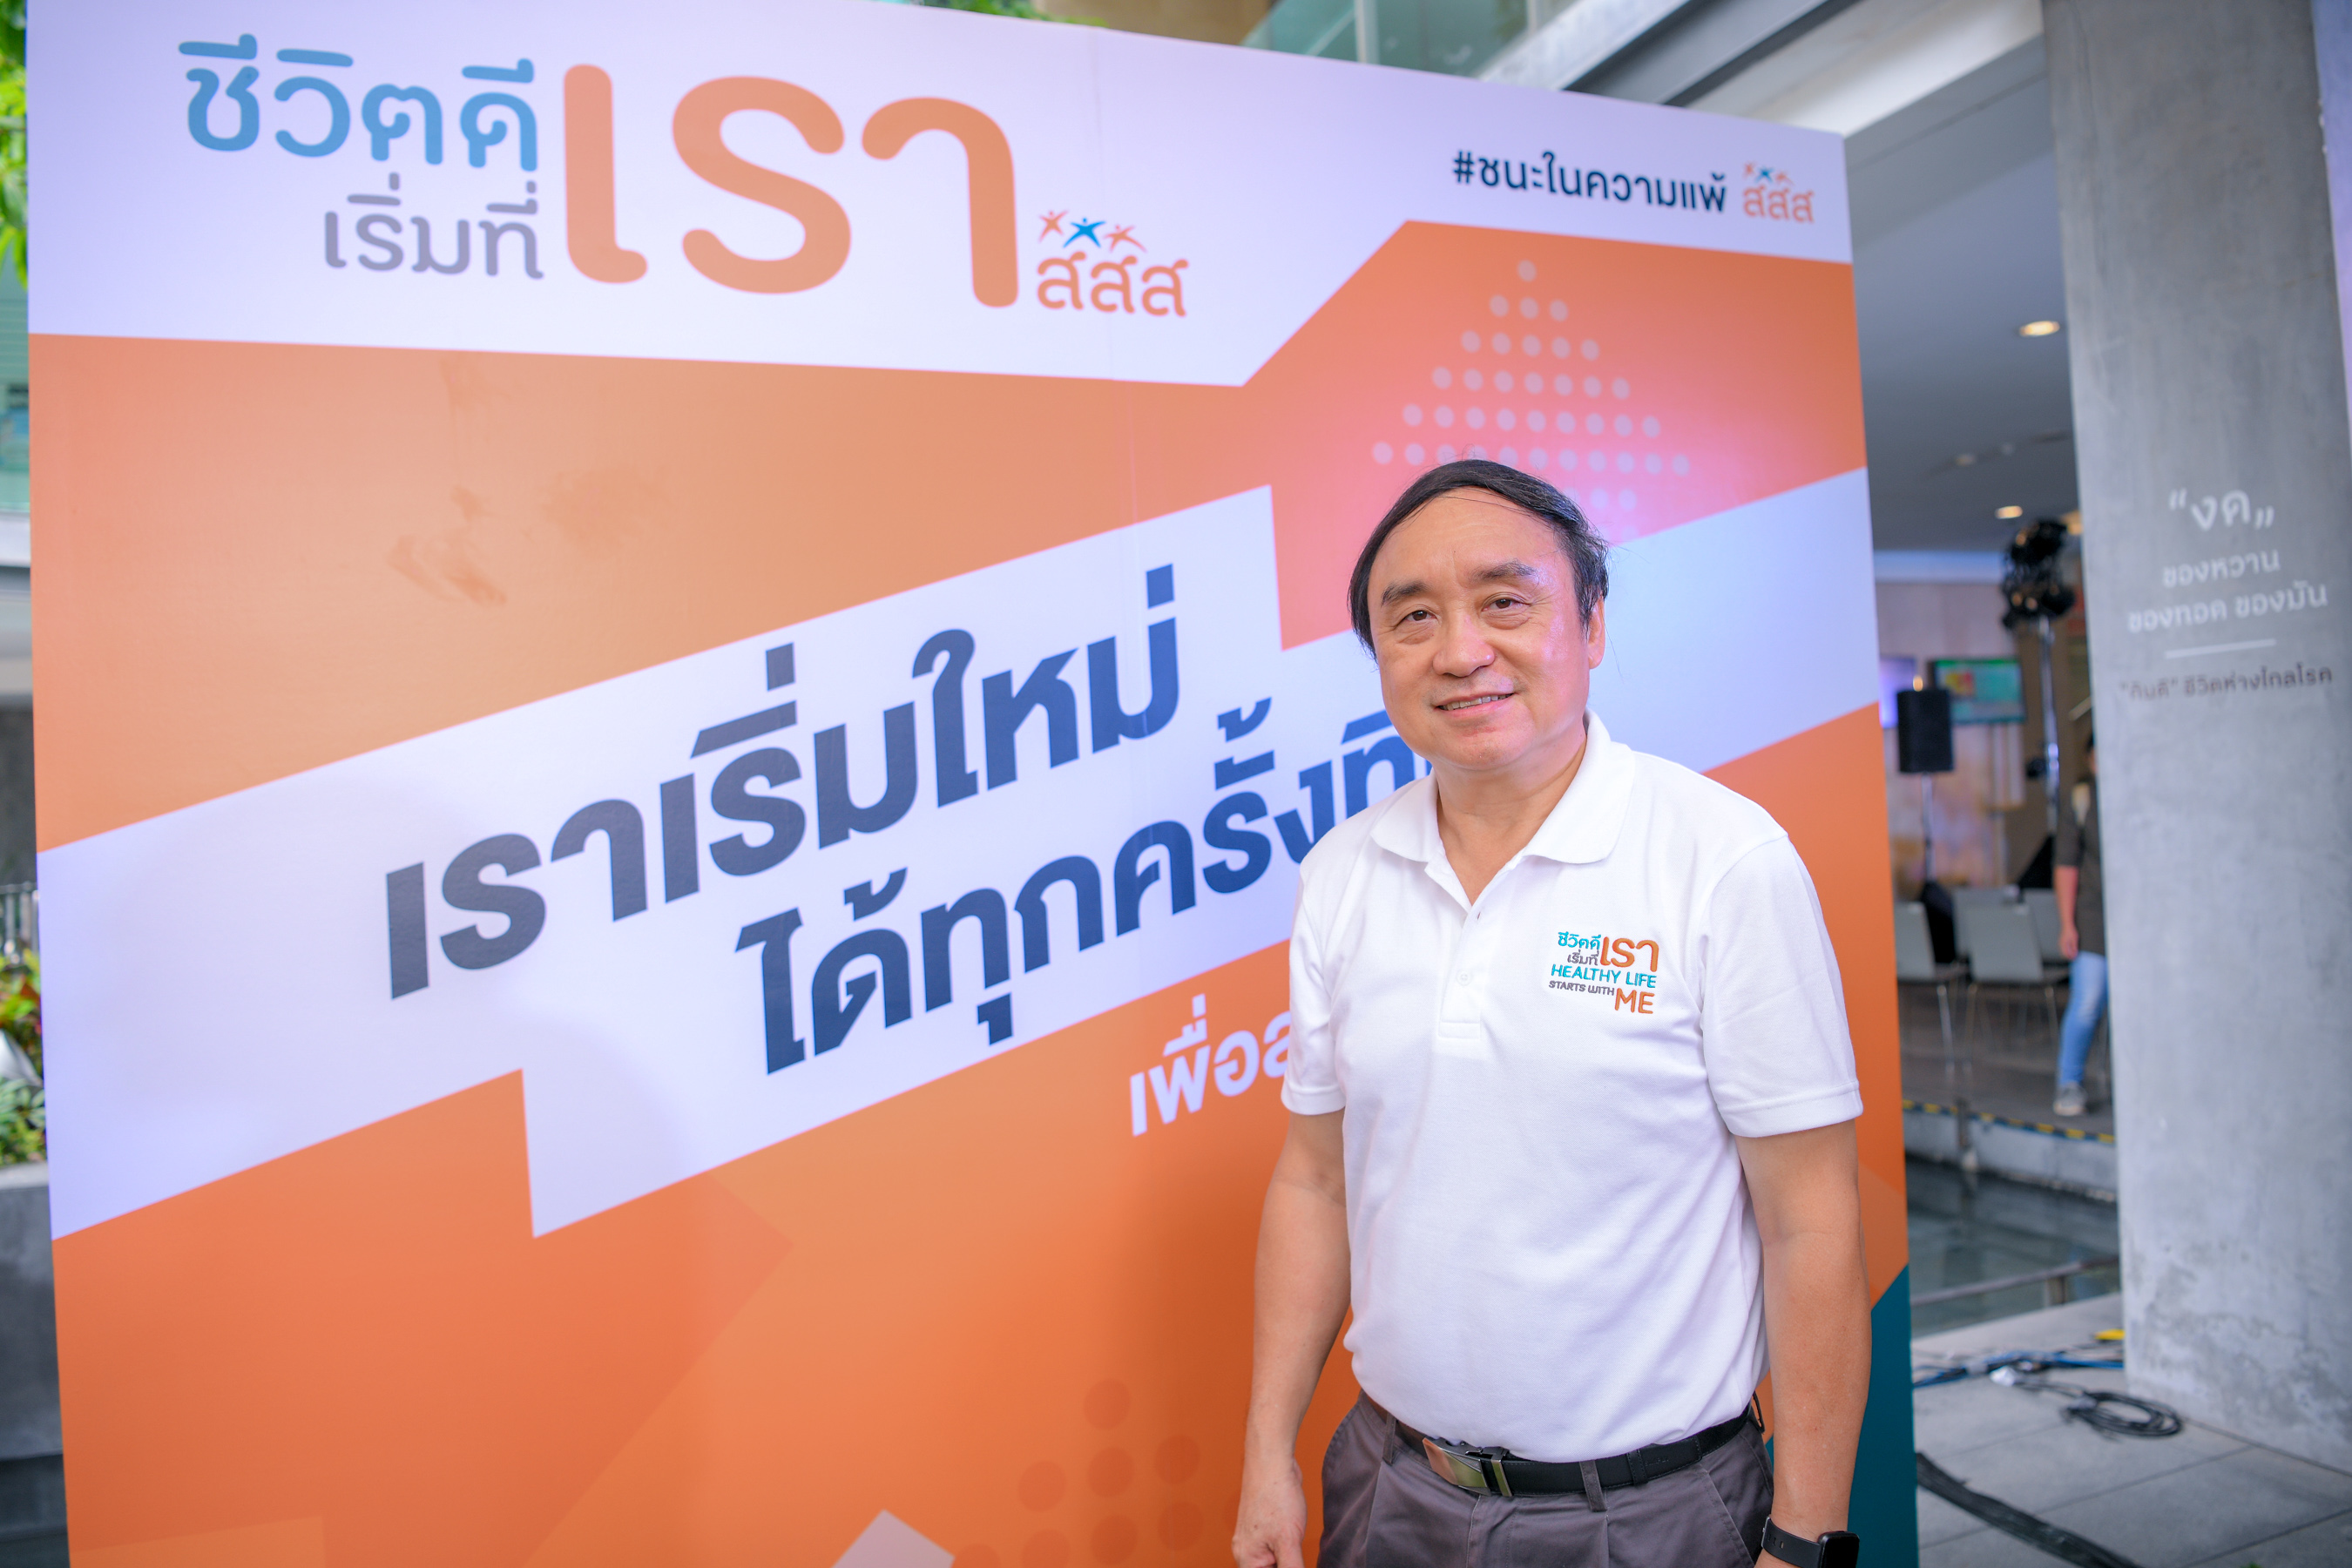 สสส. ชวนคนไทยตั้งเป้าหมายสุขภาพดีเอาชนะในความแพ้ thaihealth